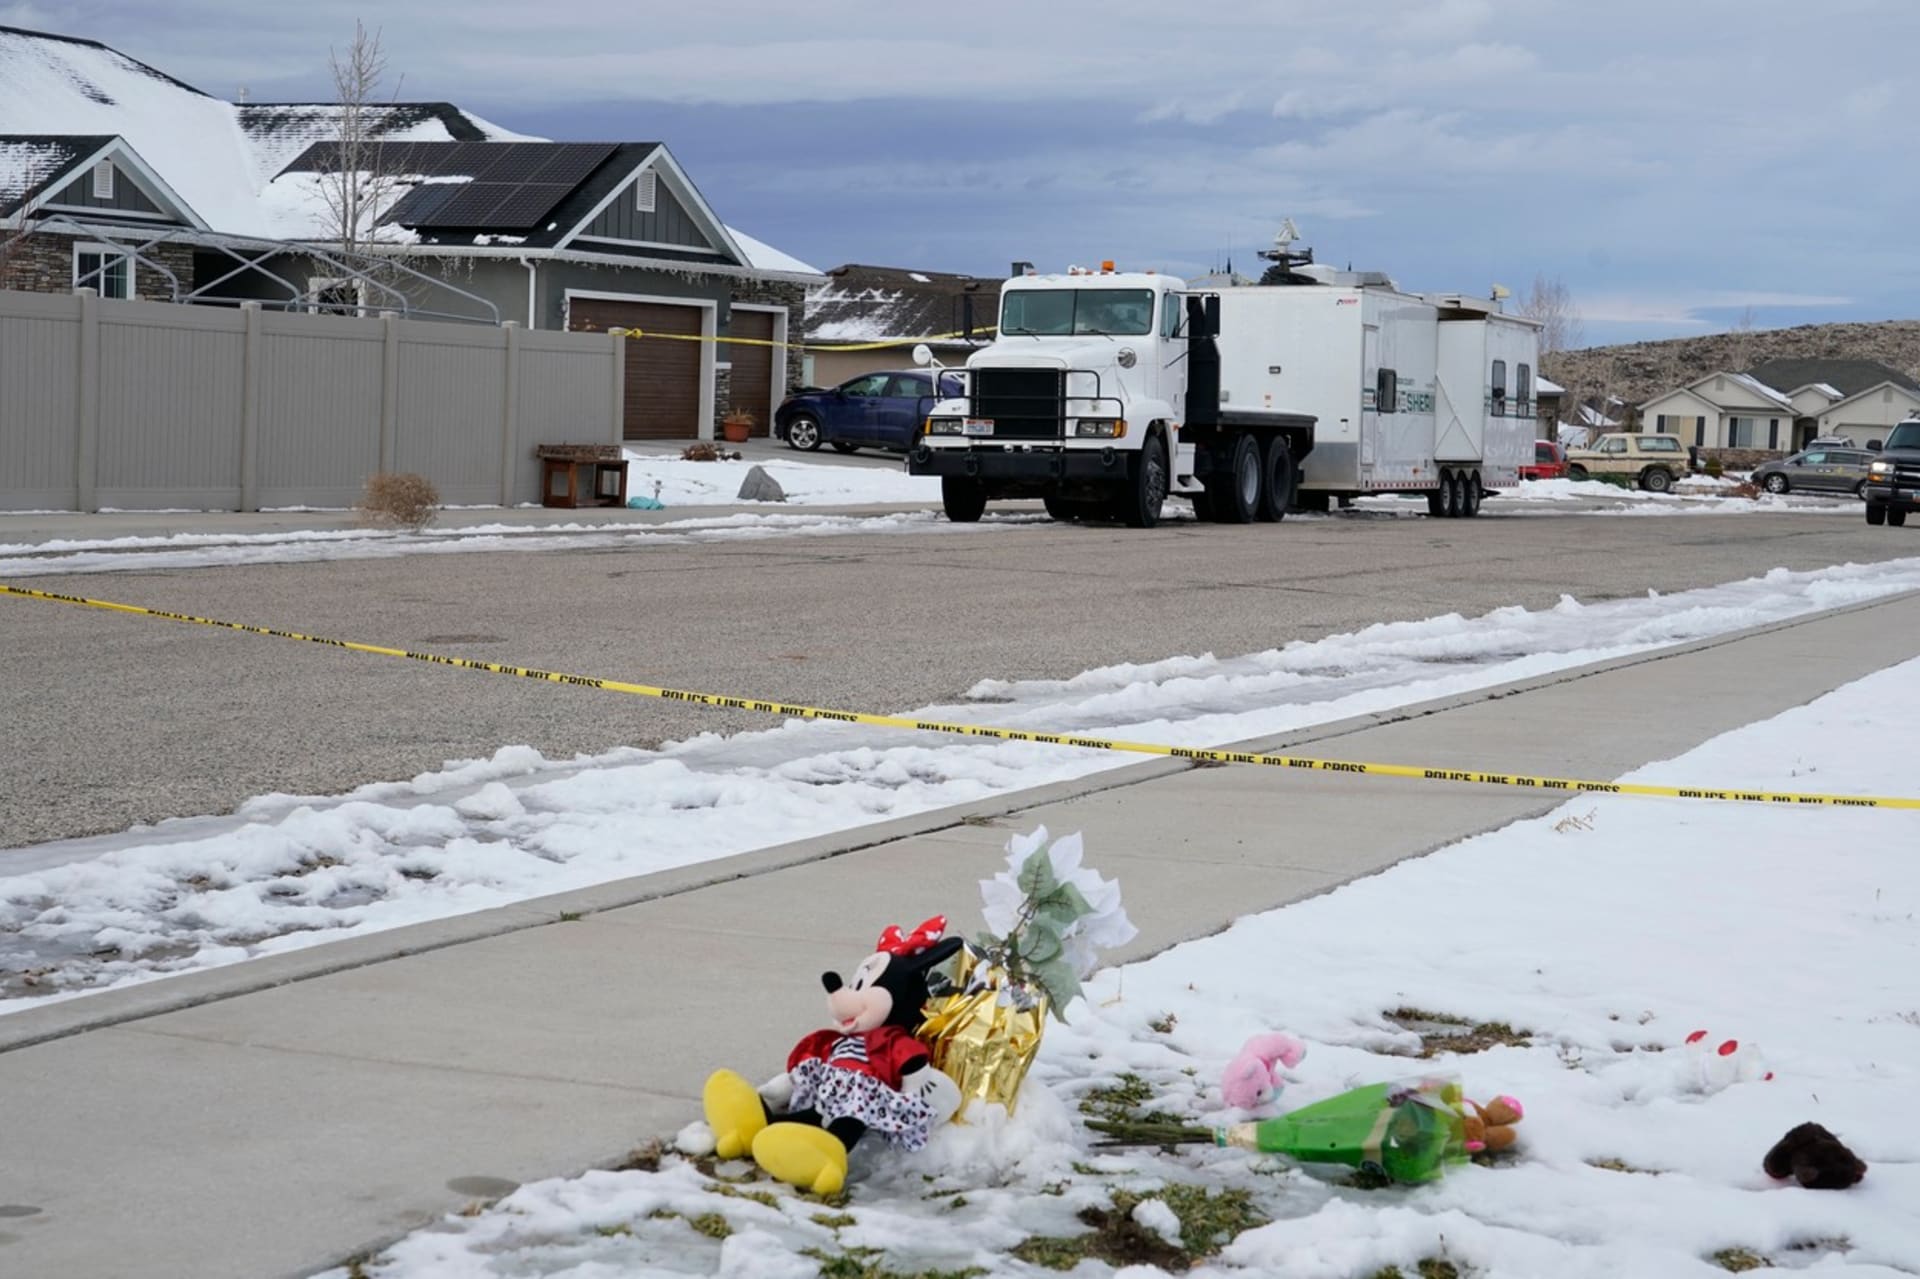 Obyvatelé města Enoch v americkém Utahu jsou zděšeni brutální vraždou.